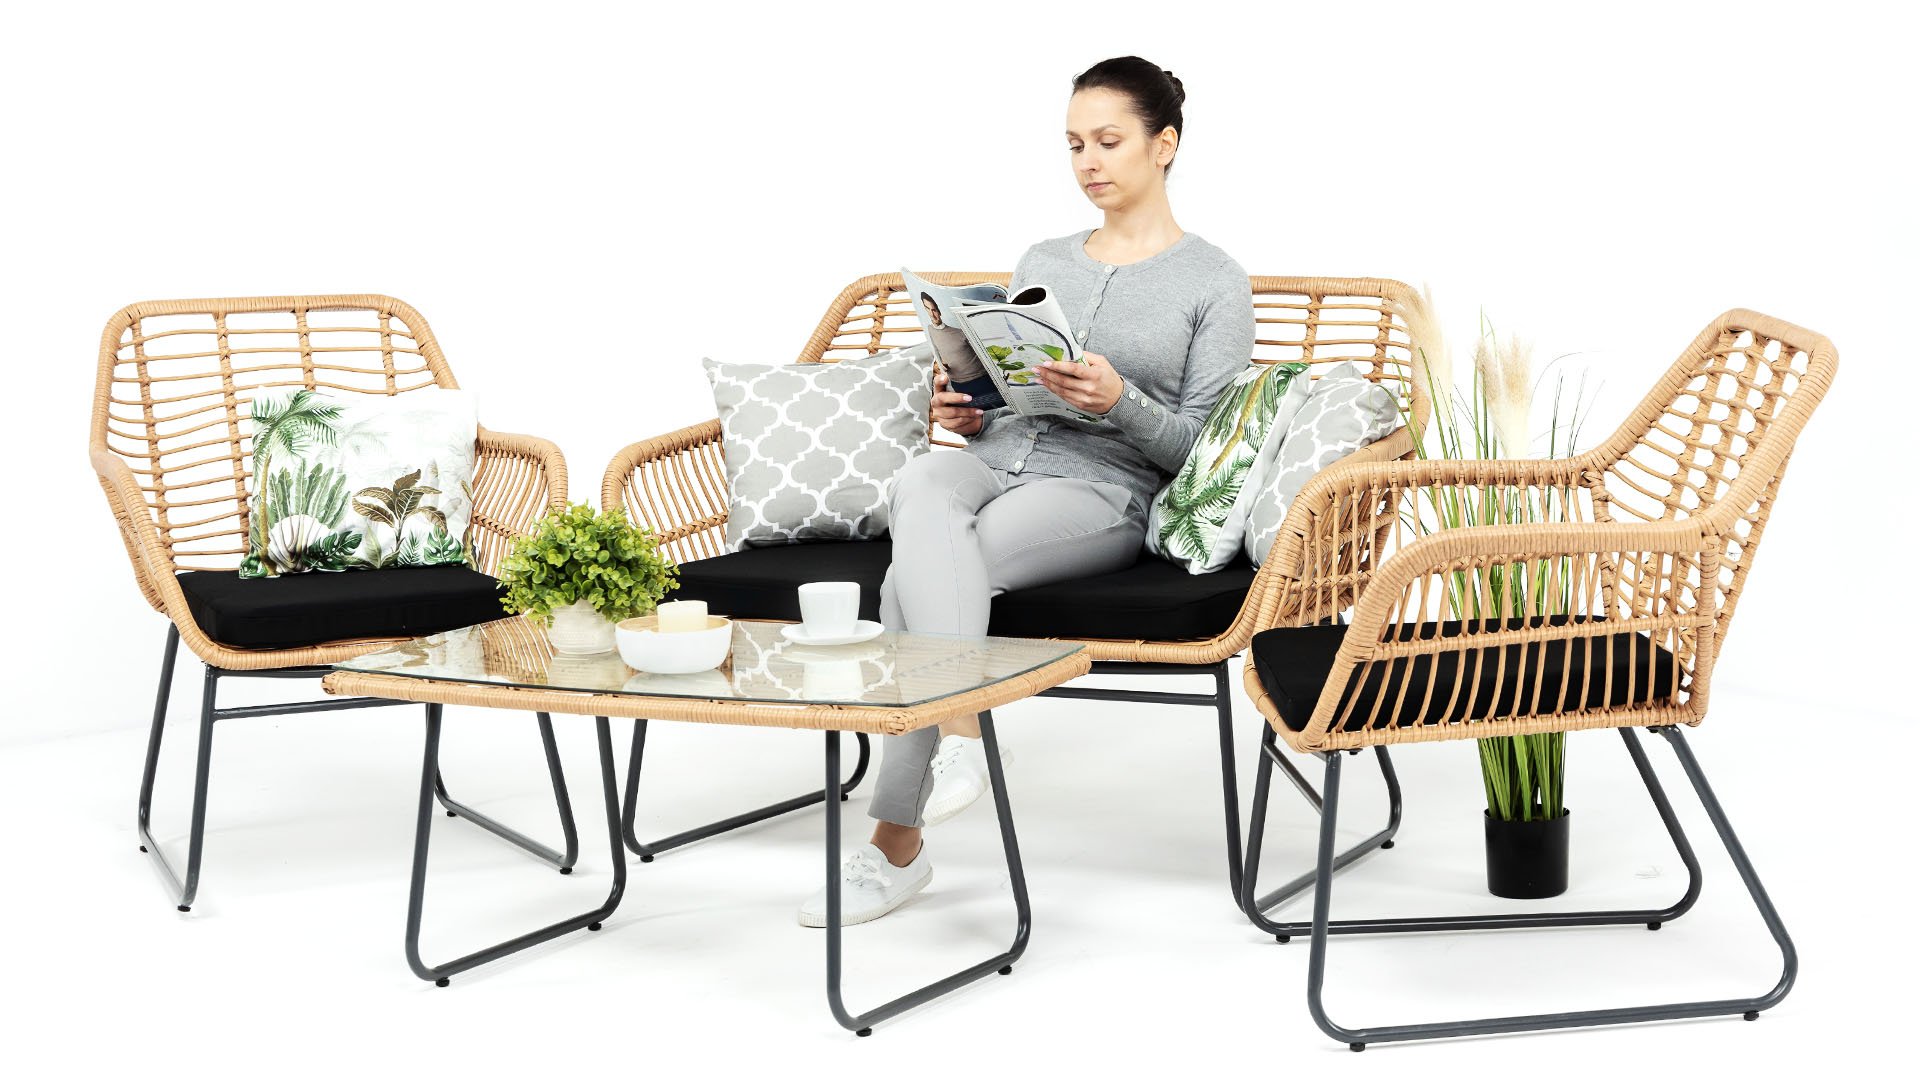 Zdjęcie kobiety siedzącej na komplecie produktów sklepu internetowego meblobranie